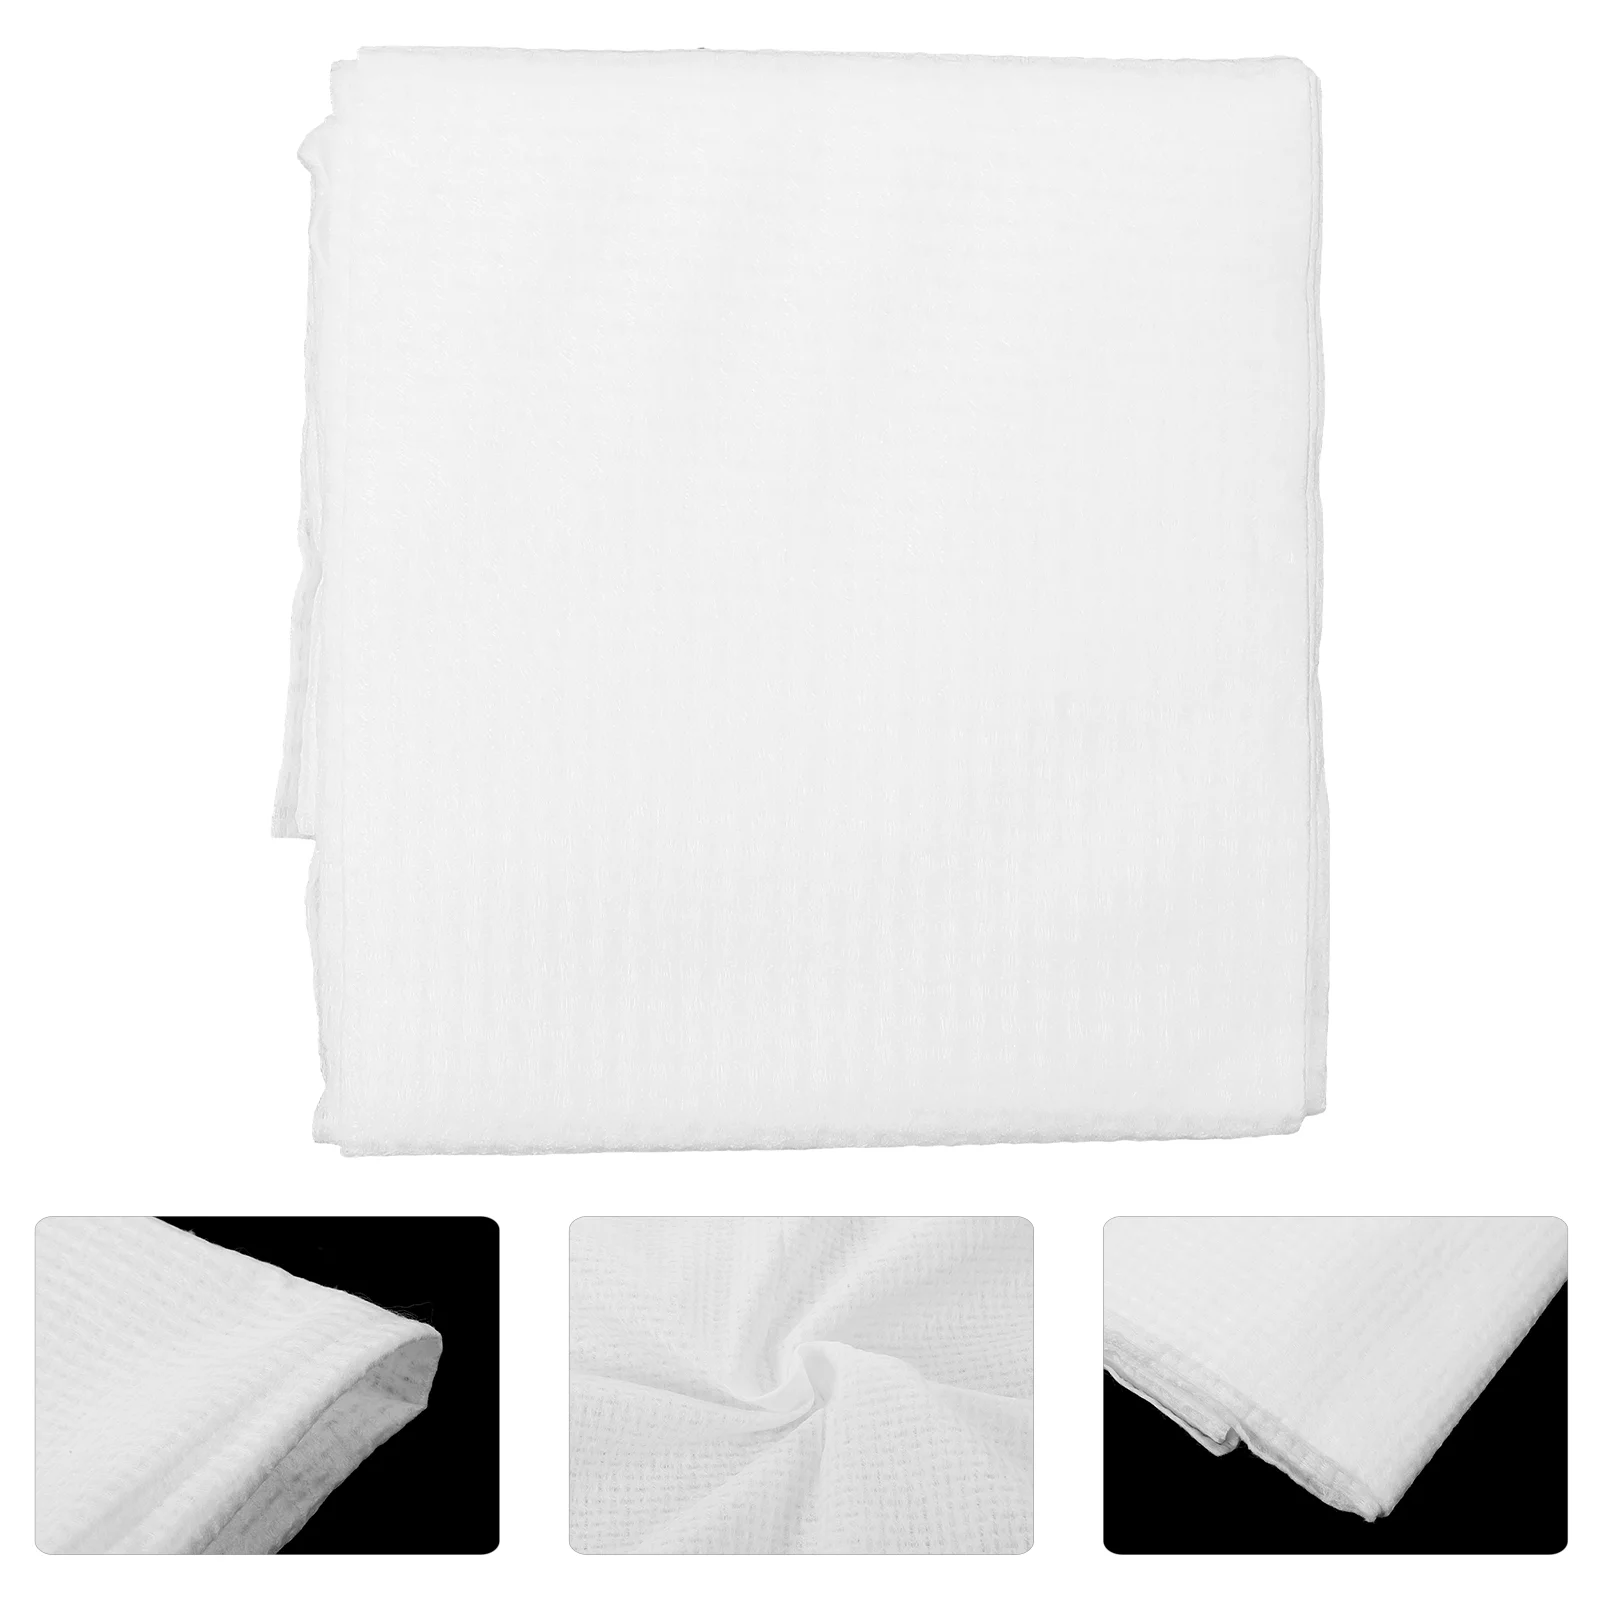 

10 шт. одноразовые полотенца для гостей, хлопковые полотенца, одноразовые полотенца для рук для отеля, ресторана